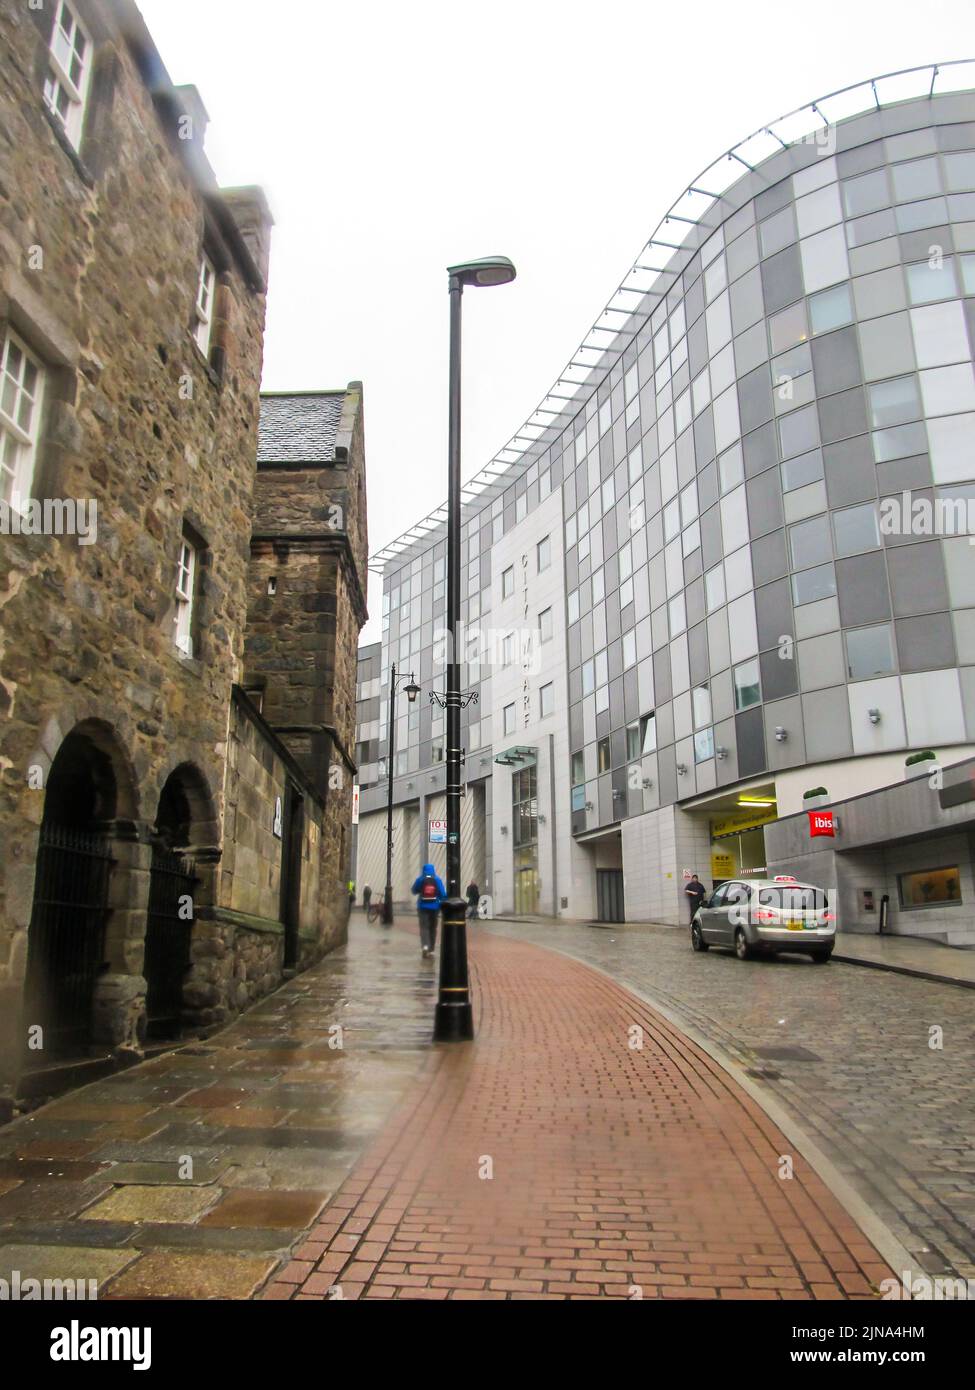 Contrasti ad Aberdeen, guardando su una strada cittadina con un vecchio edificio in pietra su di un lato e un moderno edificio in vetro per uffici sull'altro lato. Foto Stock